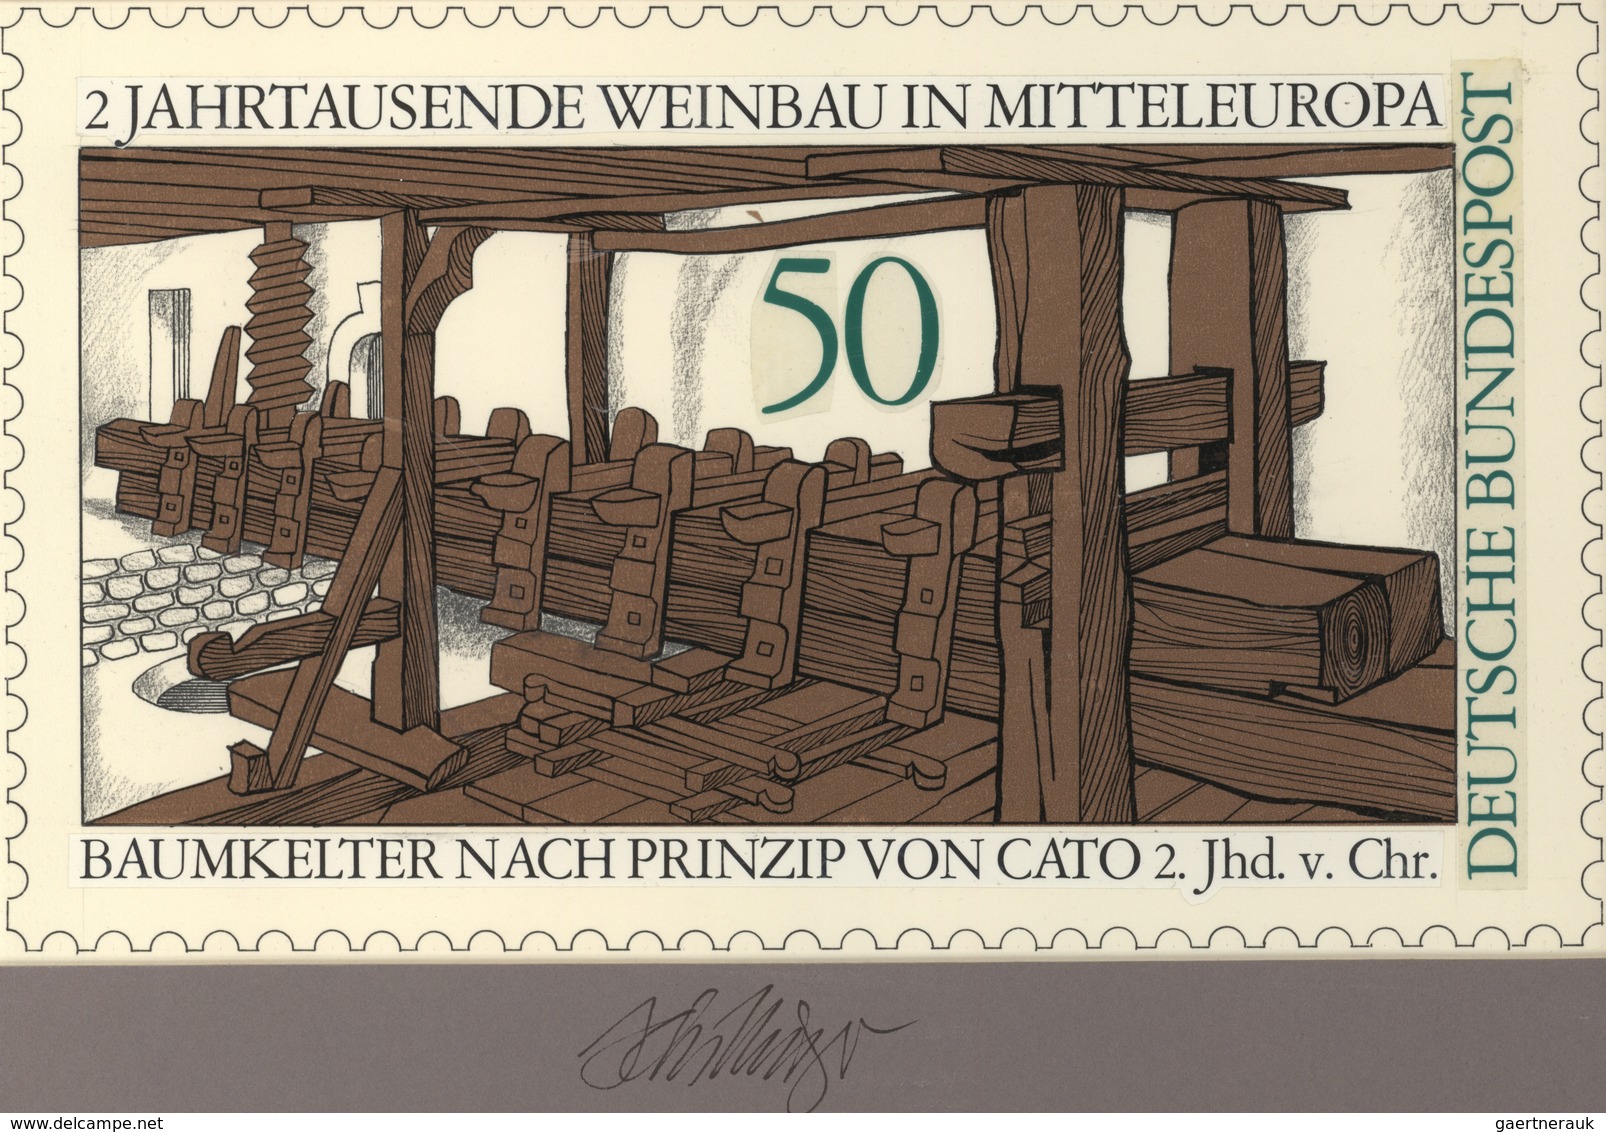 Thematik: Alkohol-Wein / Alcohol-wine: 1980, Bund, Nicht Angenommener Künstlerentwurf (26,5x15,5) Vo - Wein & Alkohol